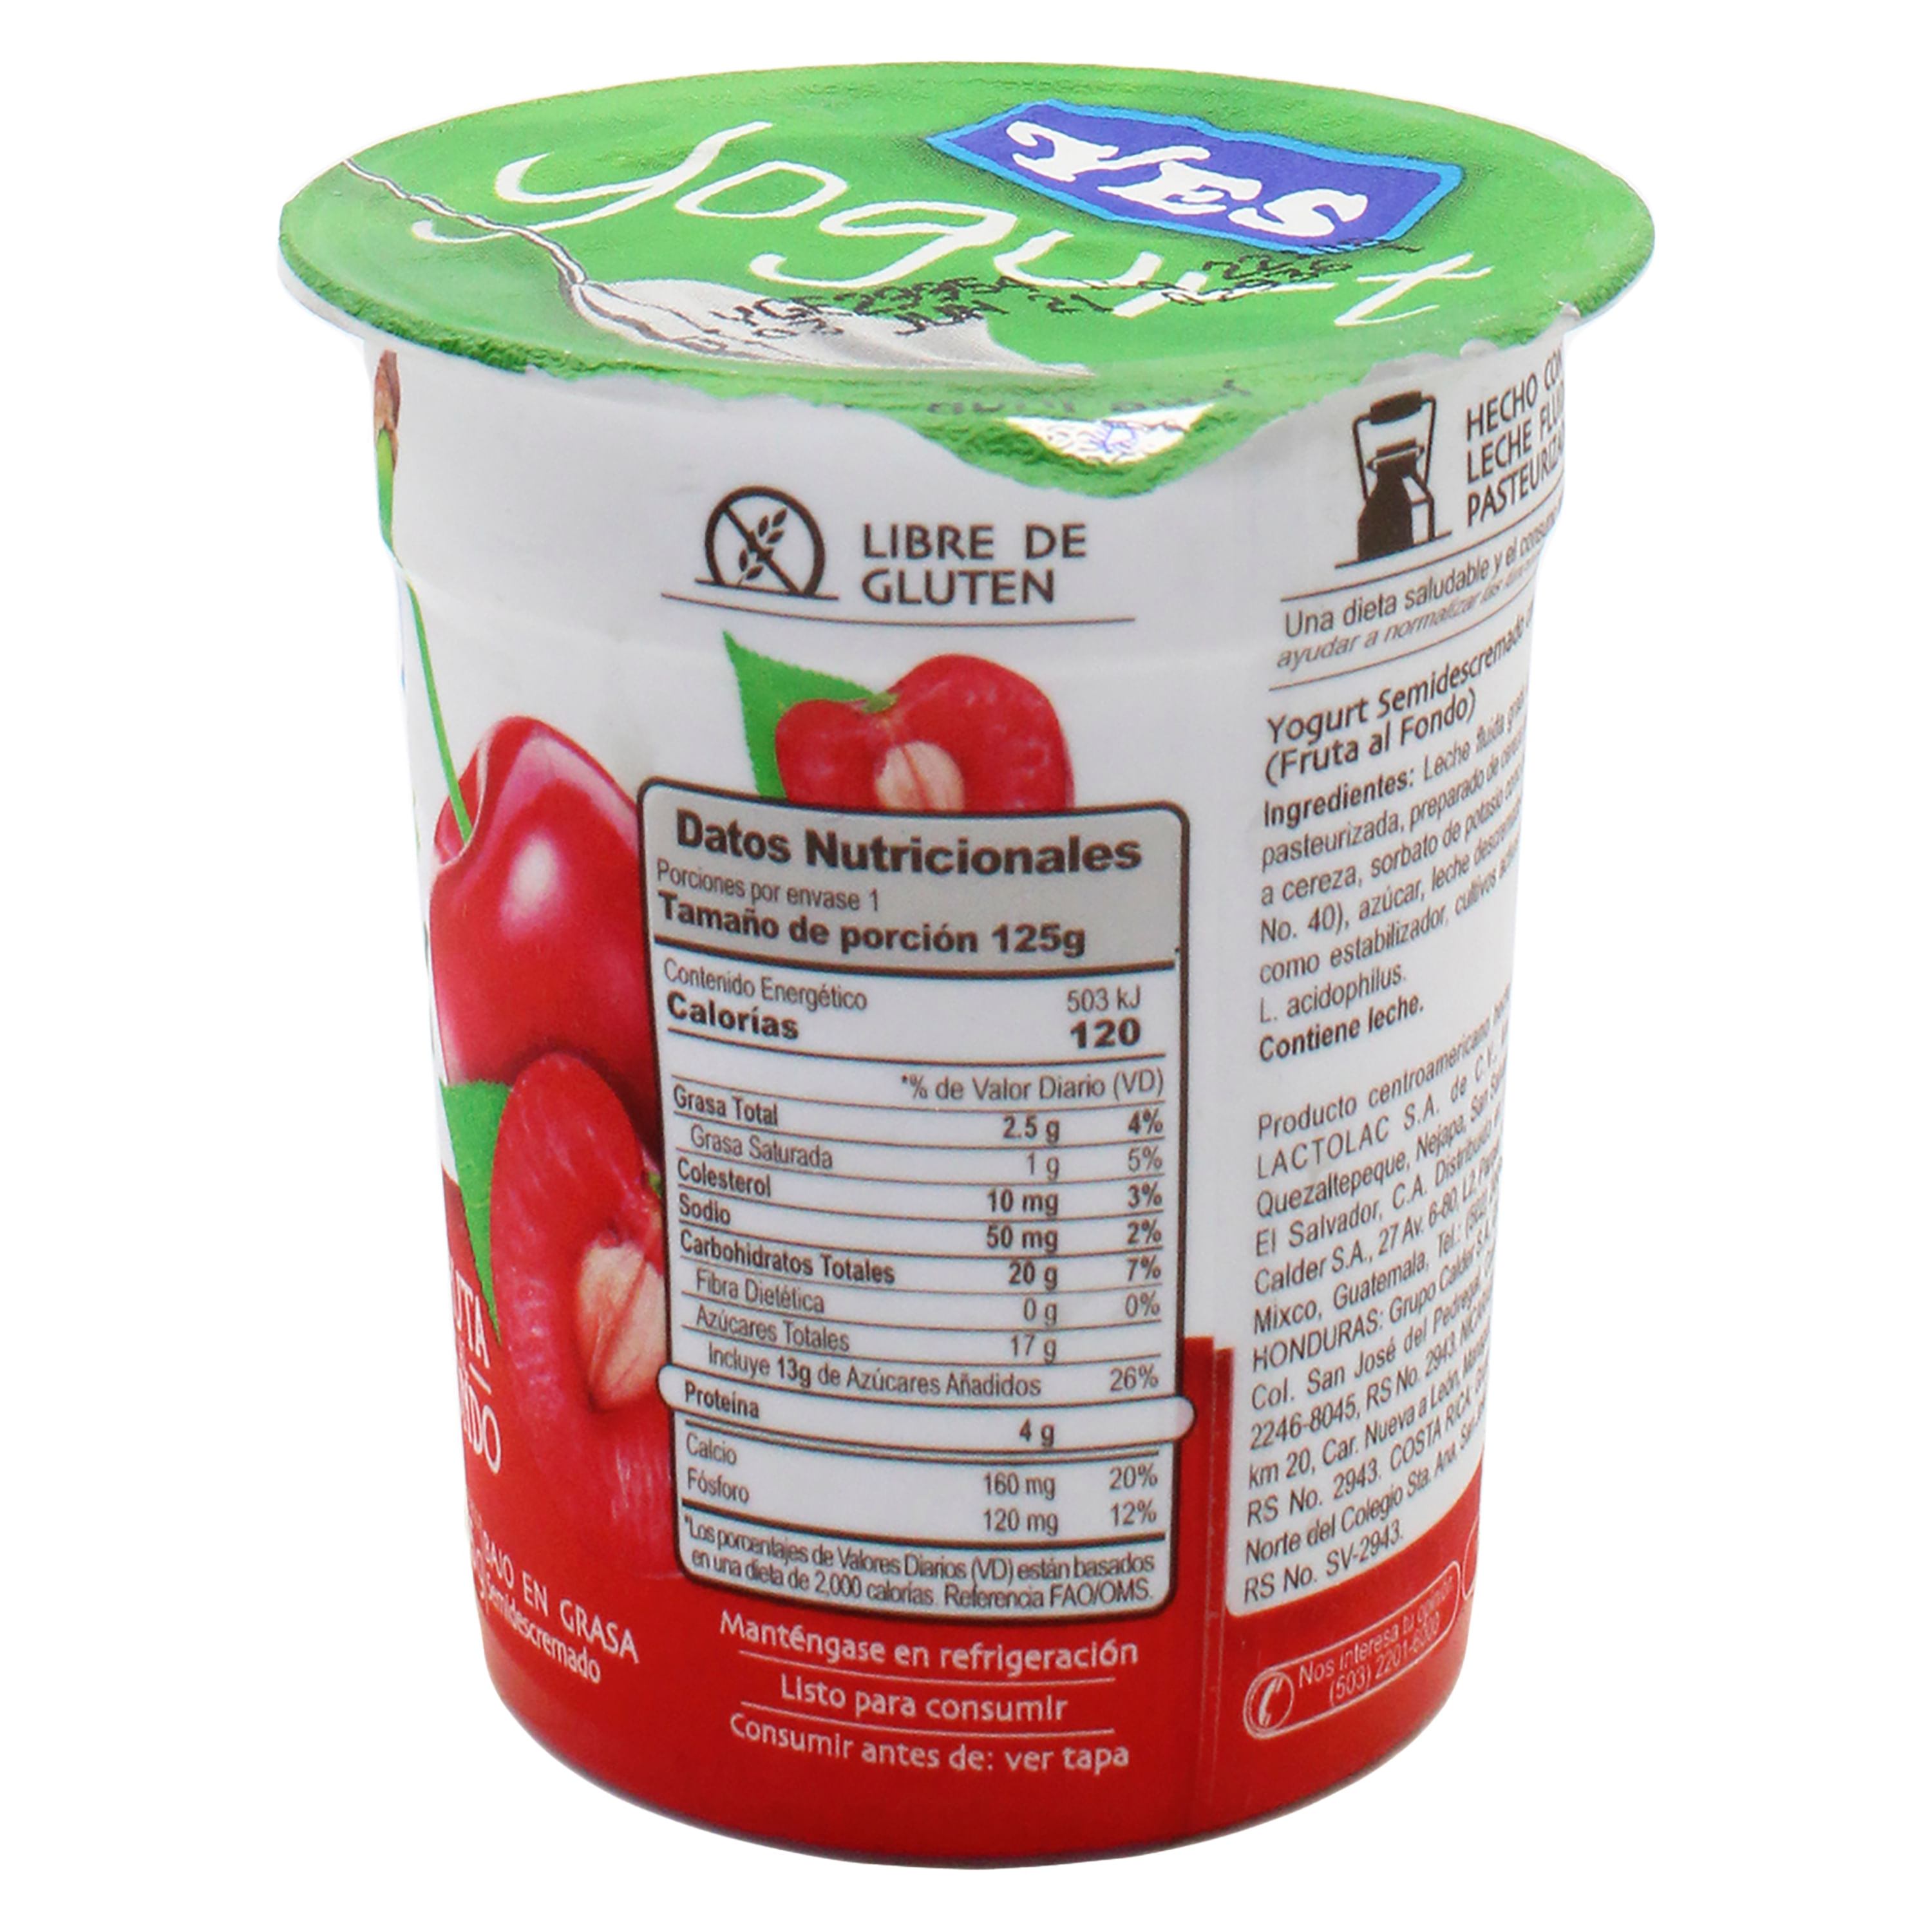 Comprar Yogurt Yes Fruta Al Fondo Fresa - 125Gr